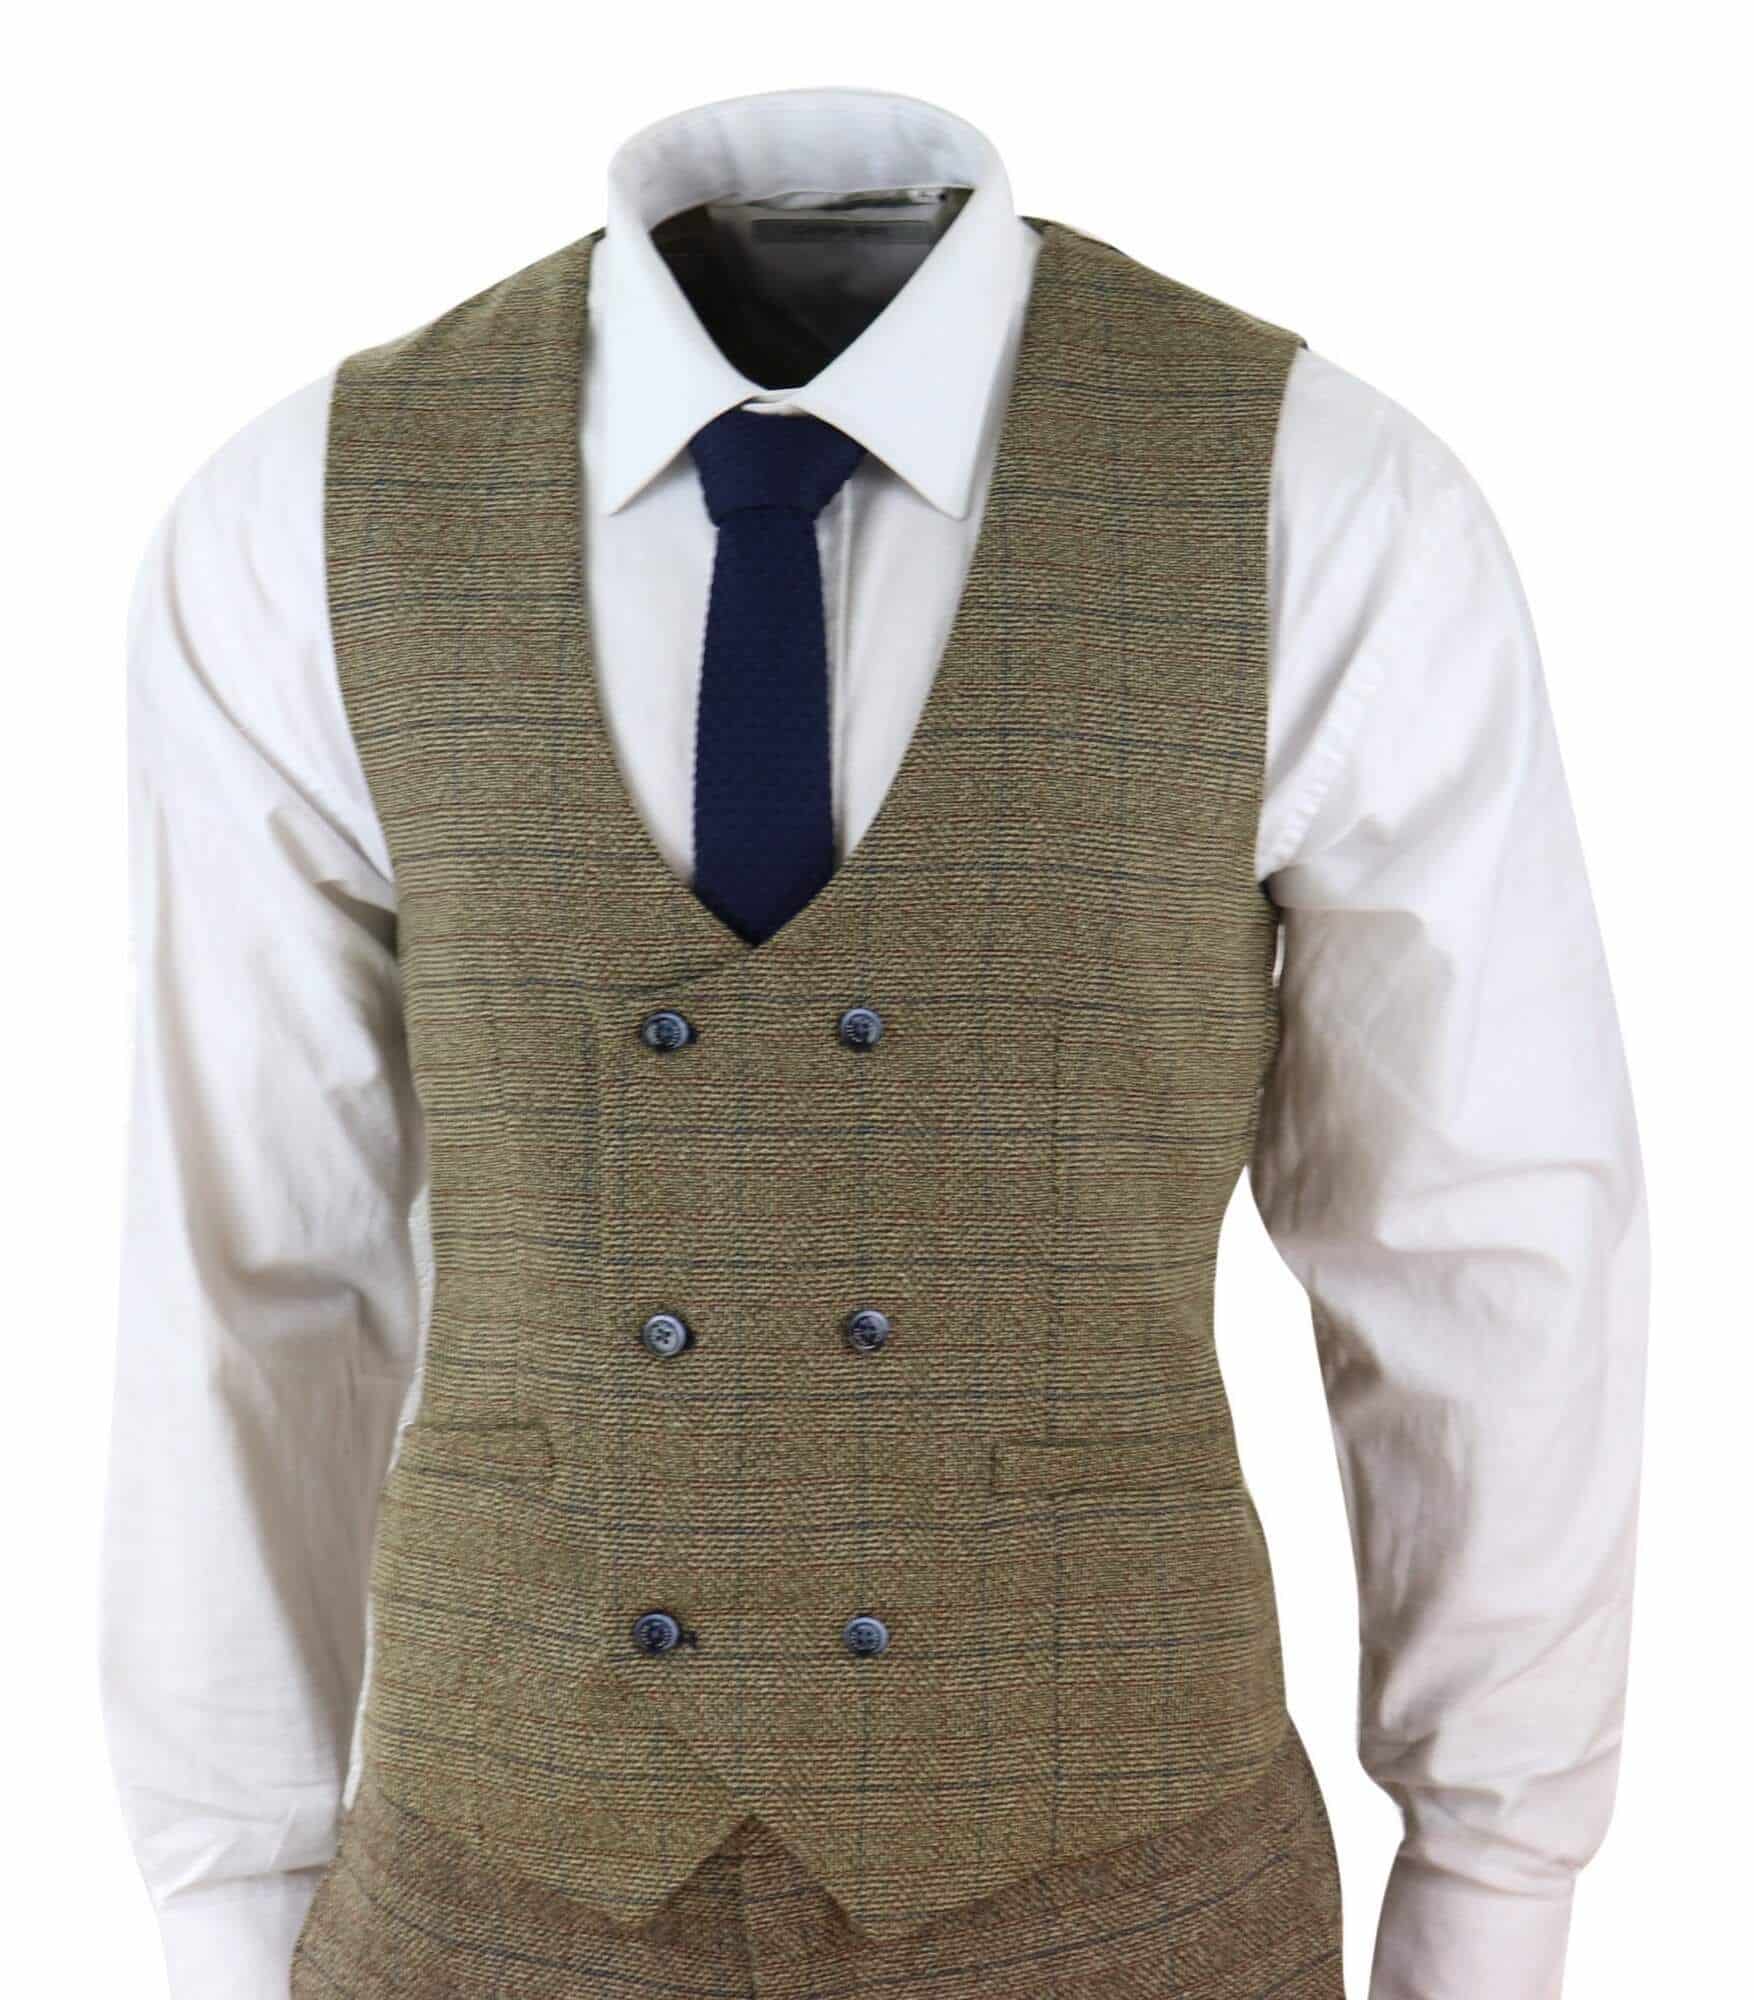 Cavani Ascari - Men's 3 Piece Oak Brown Tweed Check Suit: Buy Online ...